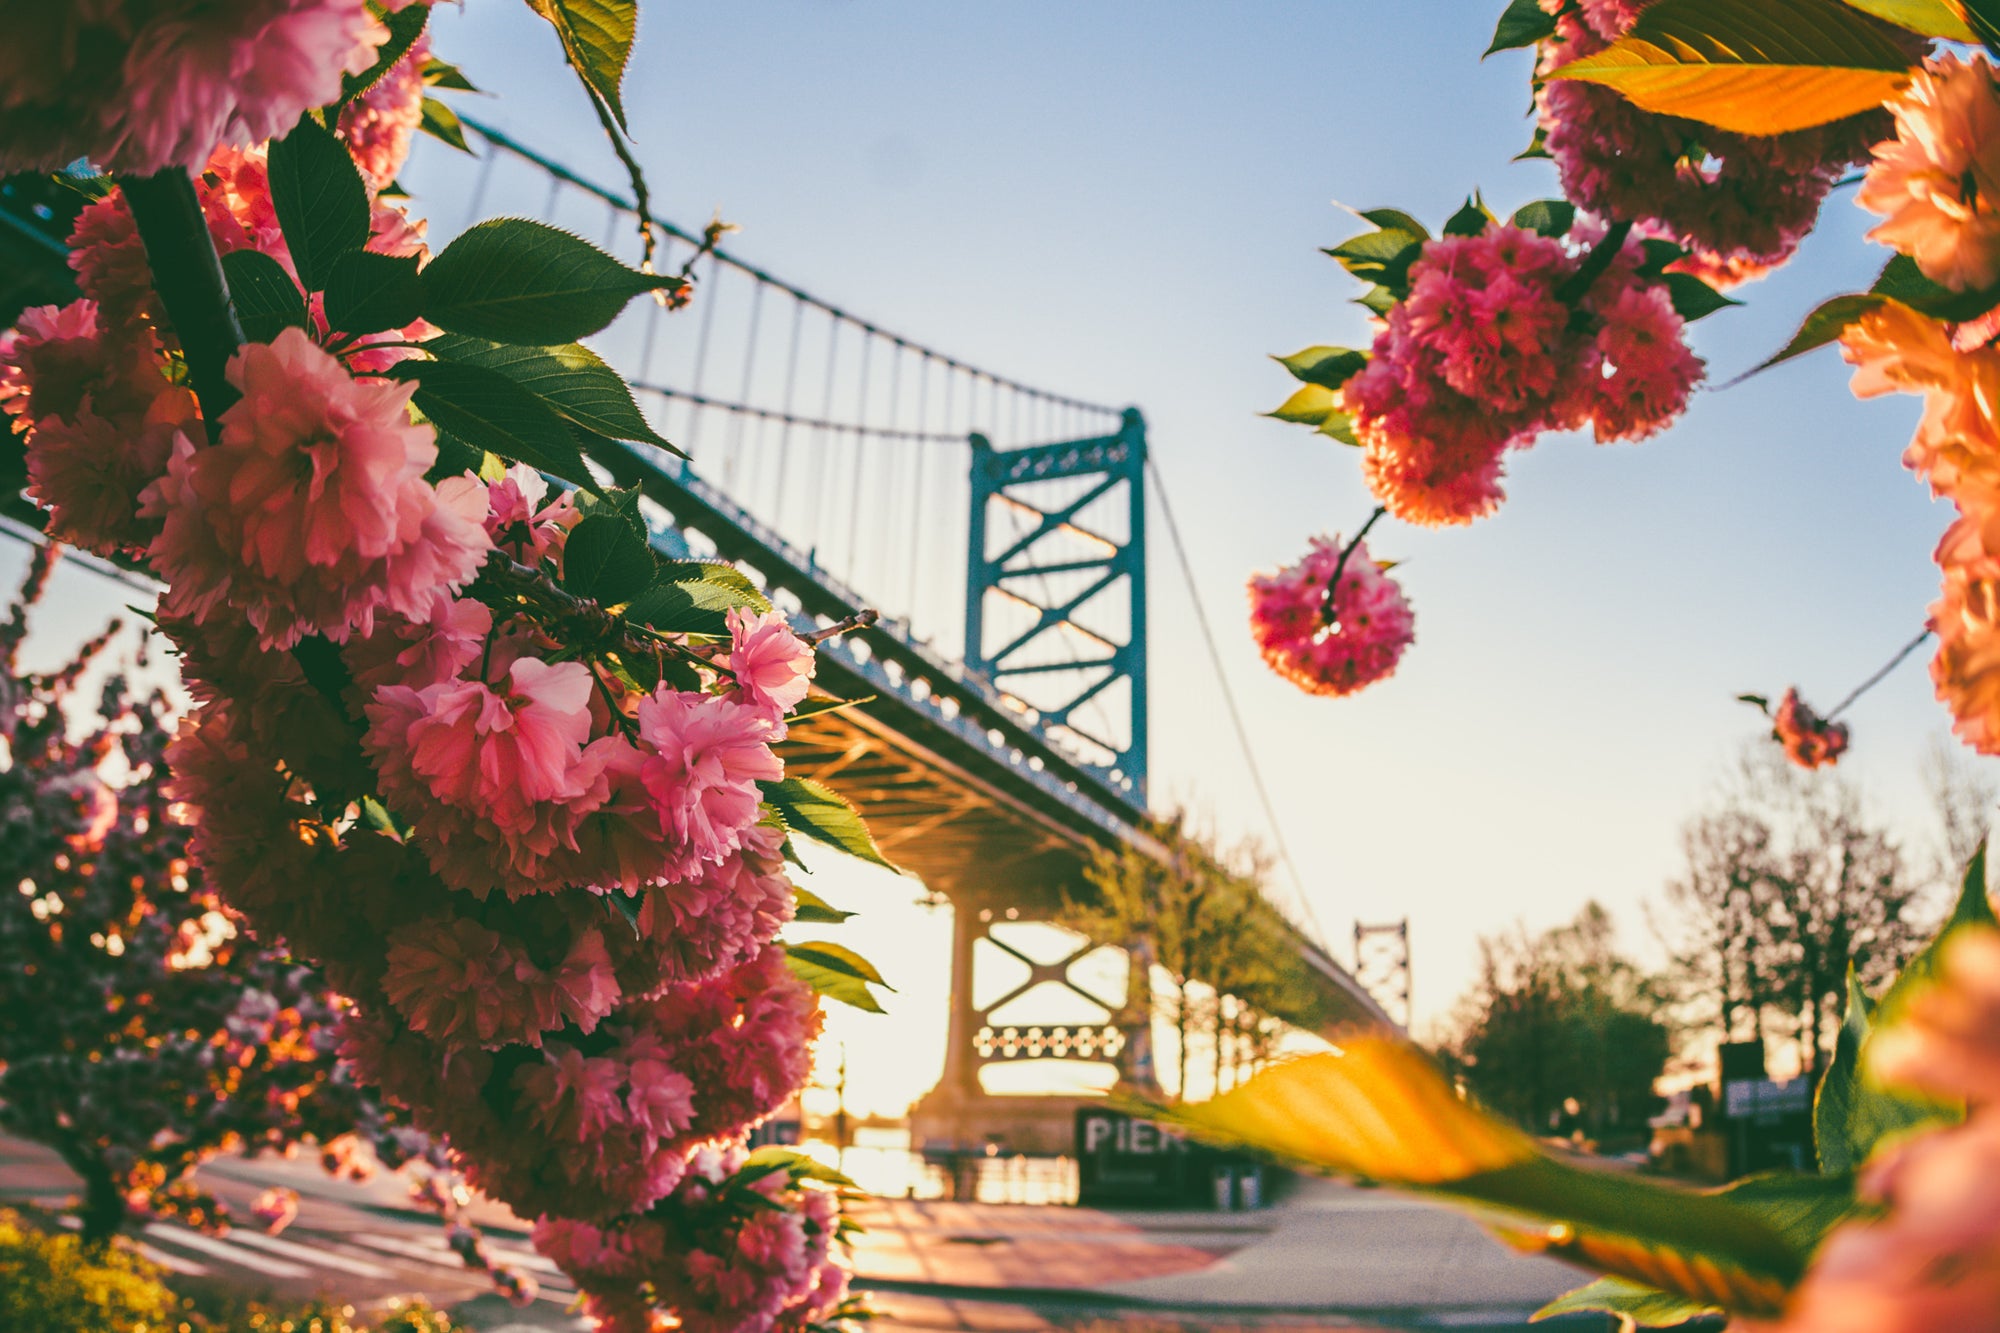 Bridge and flowers in Philadelphia